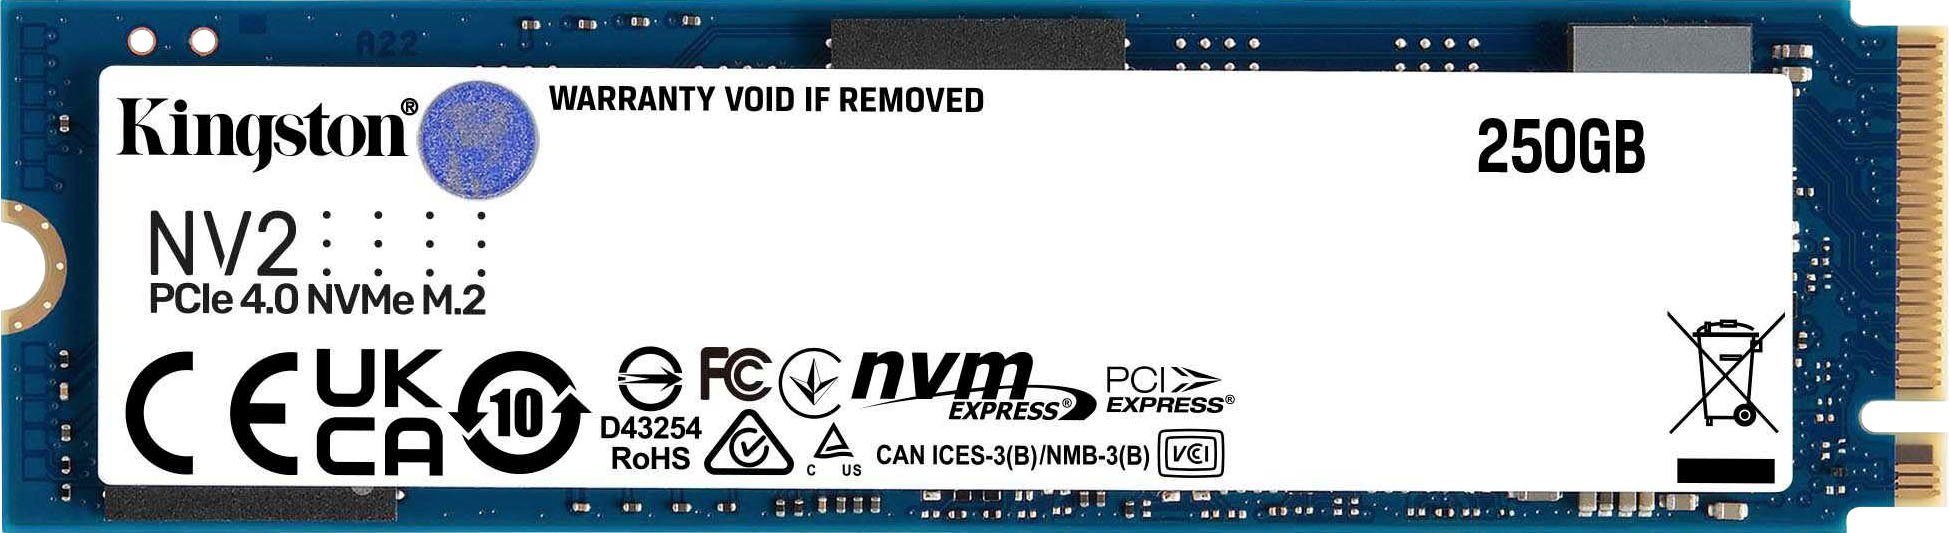 Kingston NV2 M.2 2280 PCIe 4.0 NVMe SSD 250G SSD-Festplatte (250 GB) 3500  MB/S Lesegeschwindigkeit, 3500 MB/S Schreibgeschwindigkeit